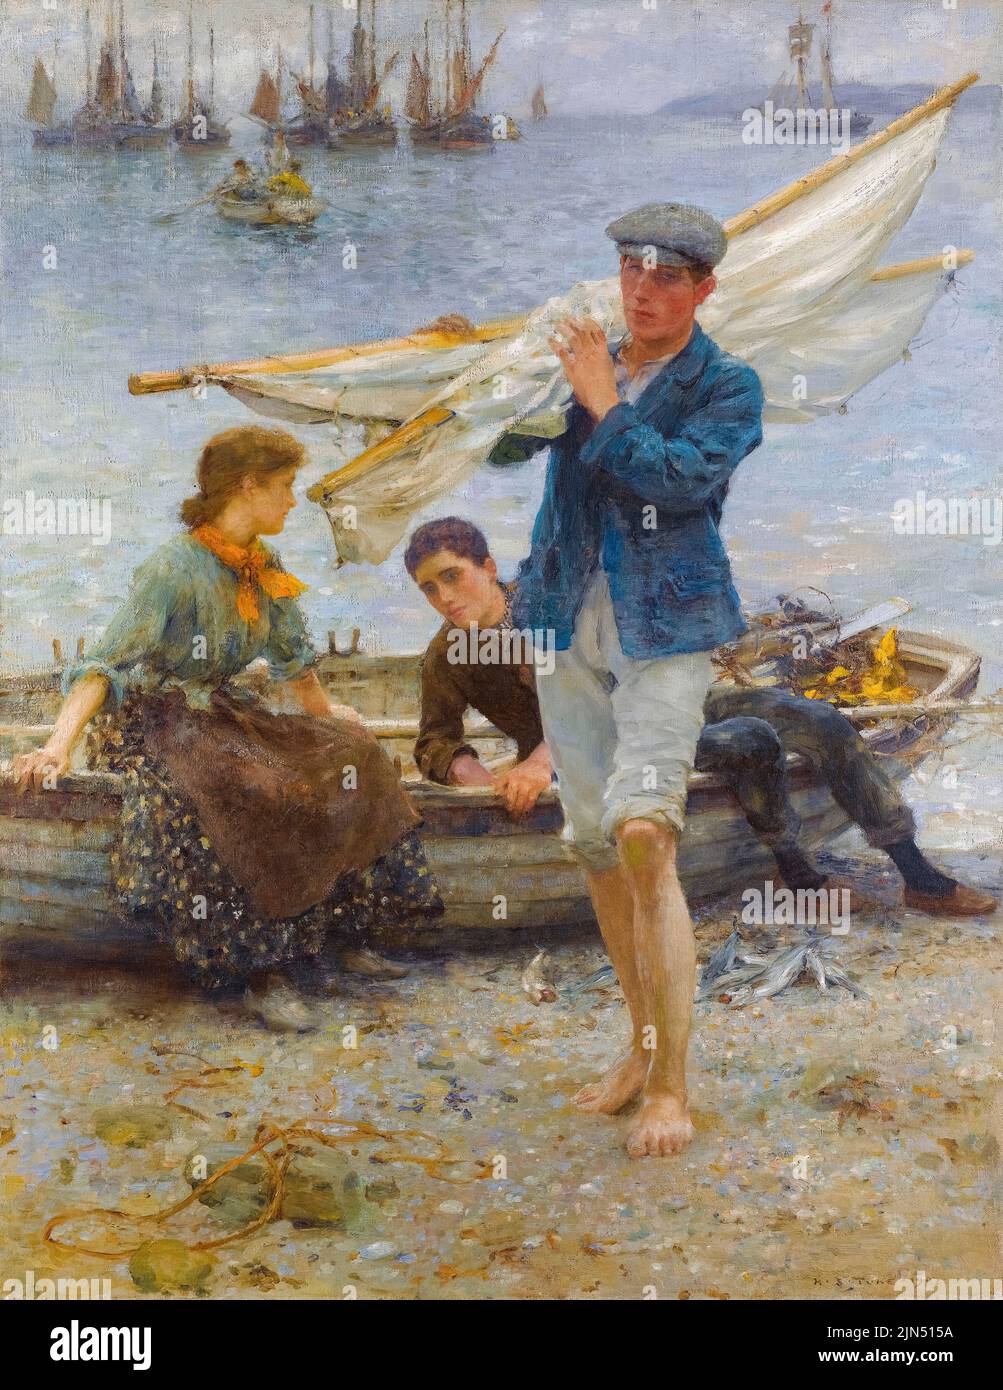 Henry Scott Tuke, ritorno dalla pesca, pittura in olio su tela, 1907 Foto Stock